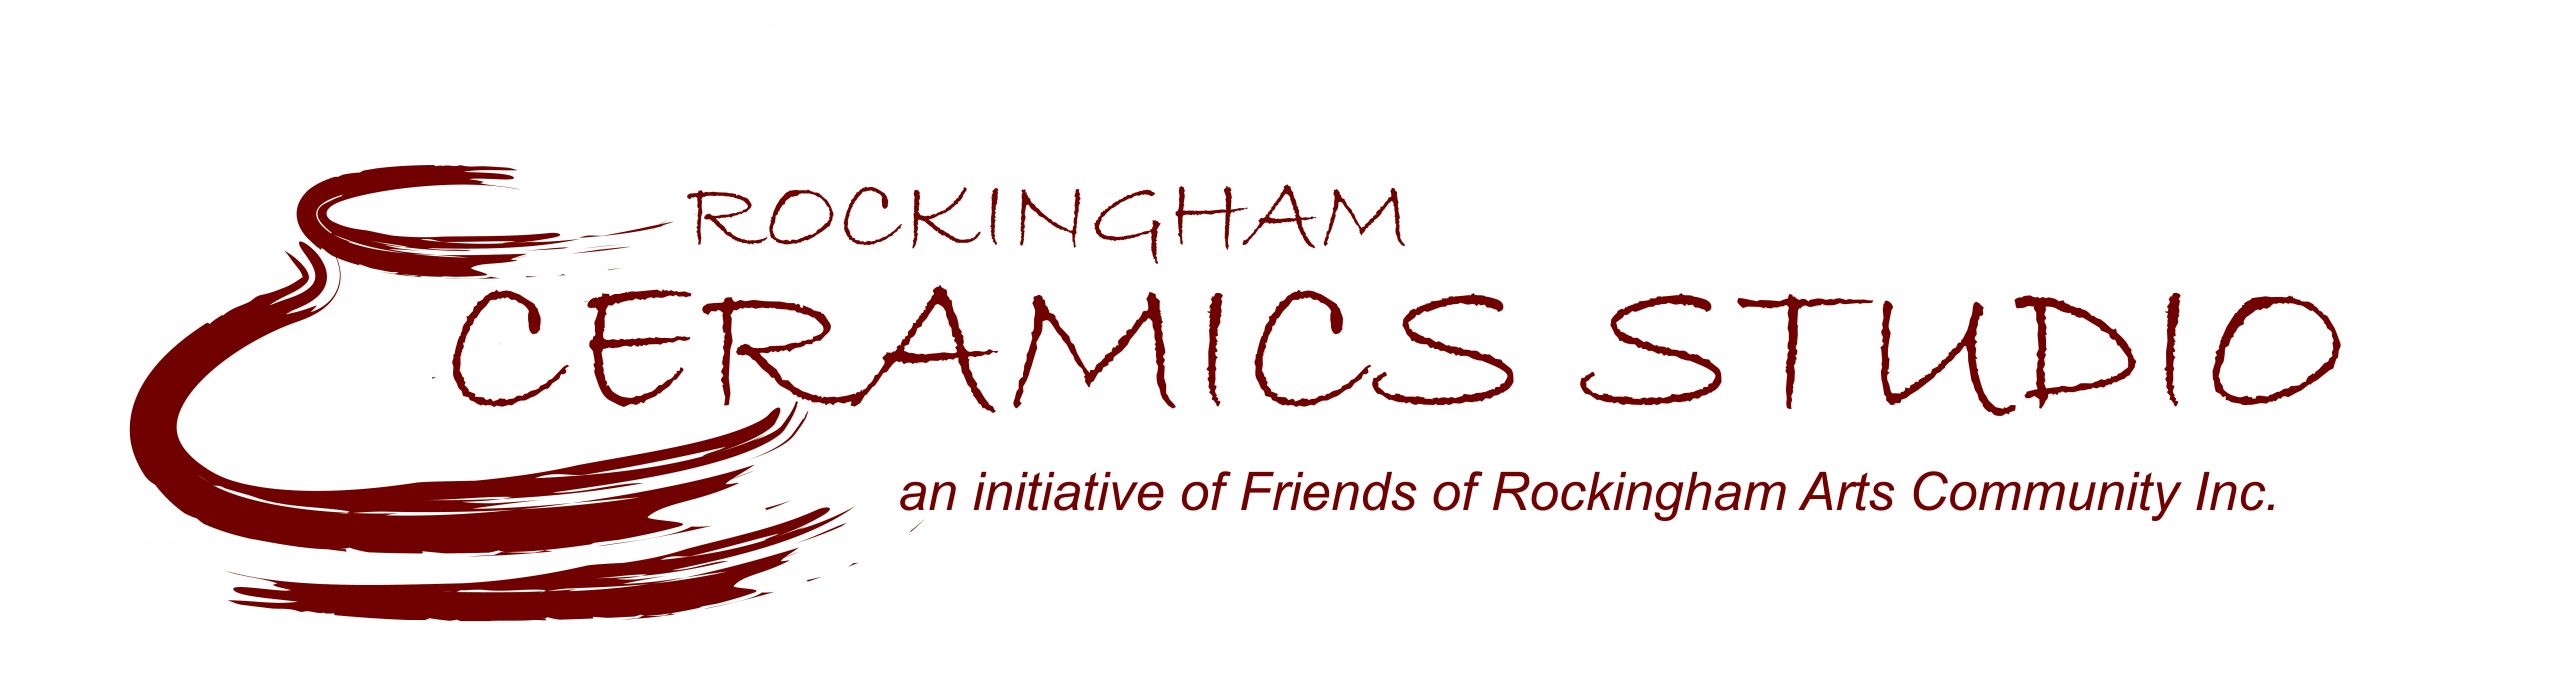 Rockingham Ceramics Studio Logo